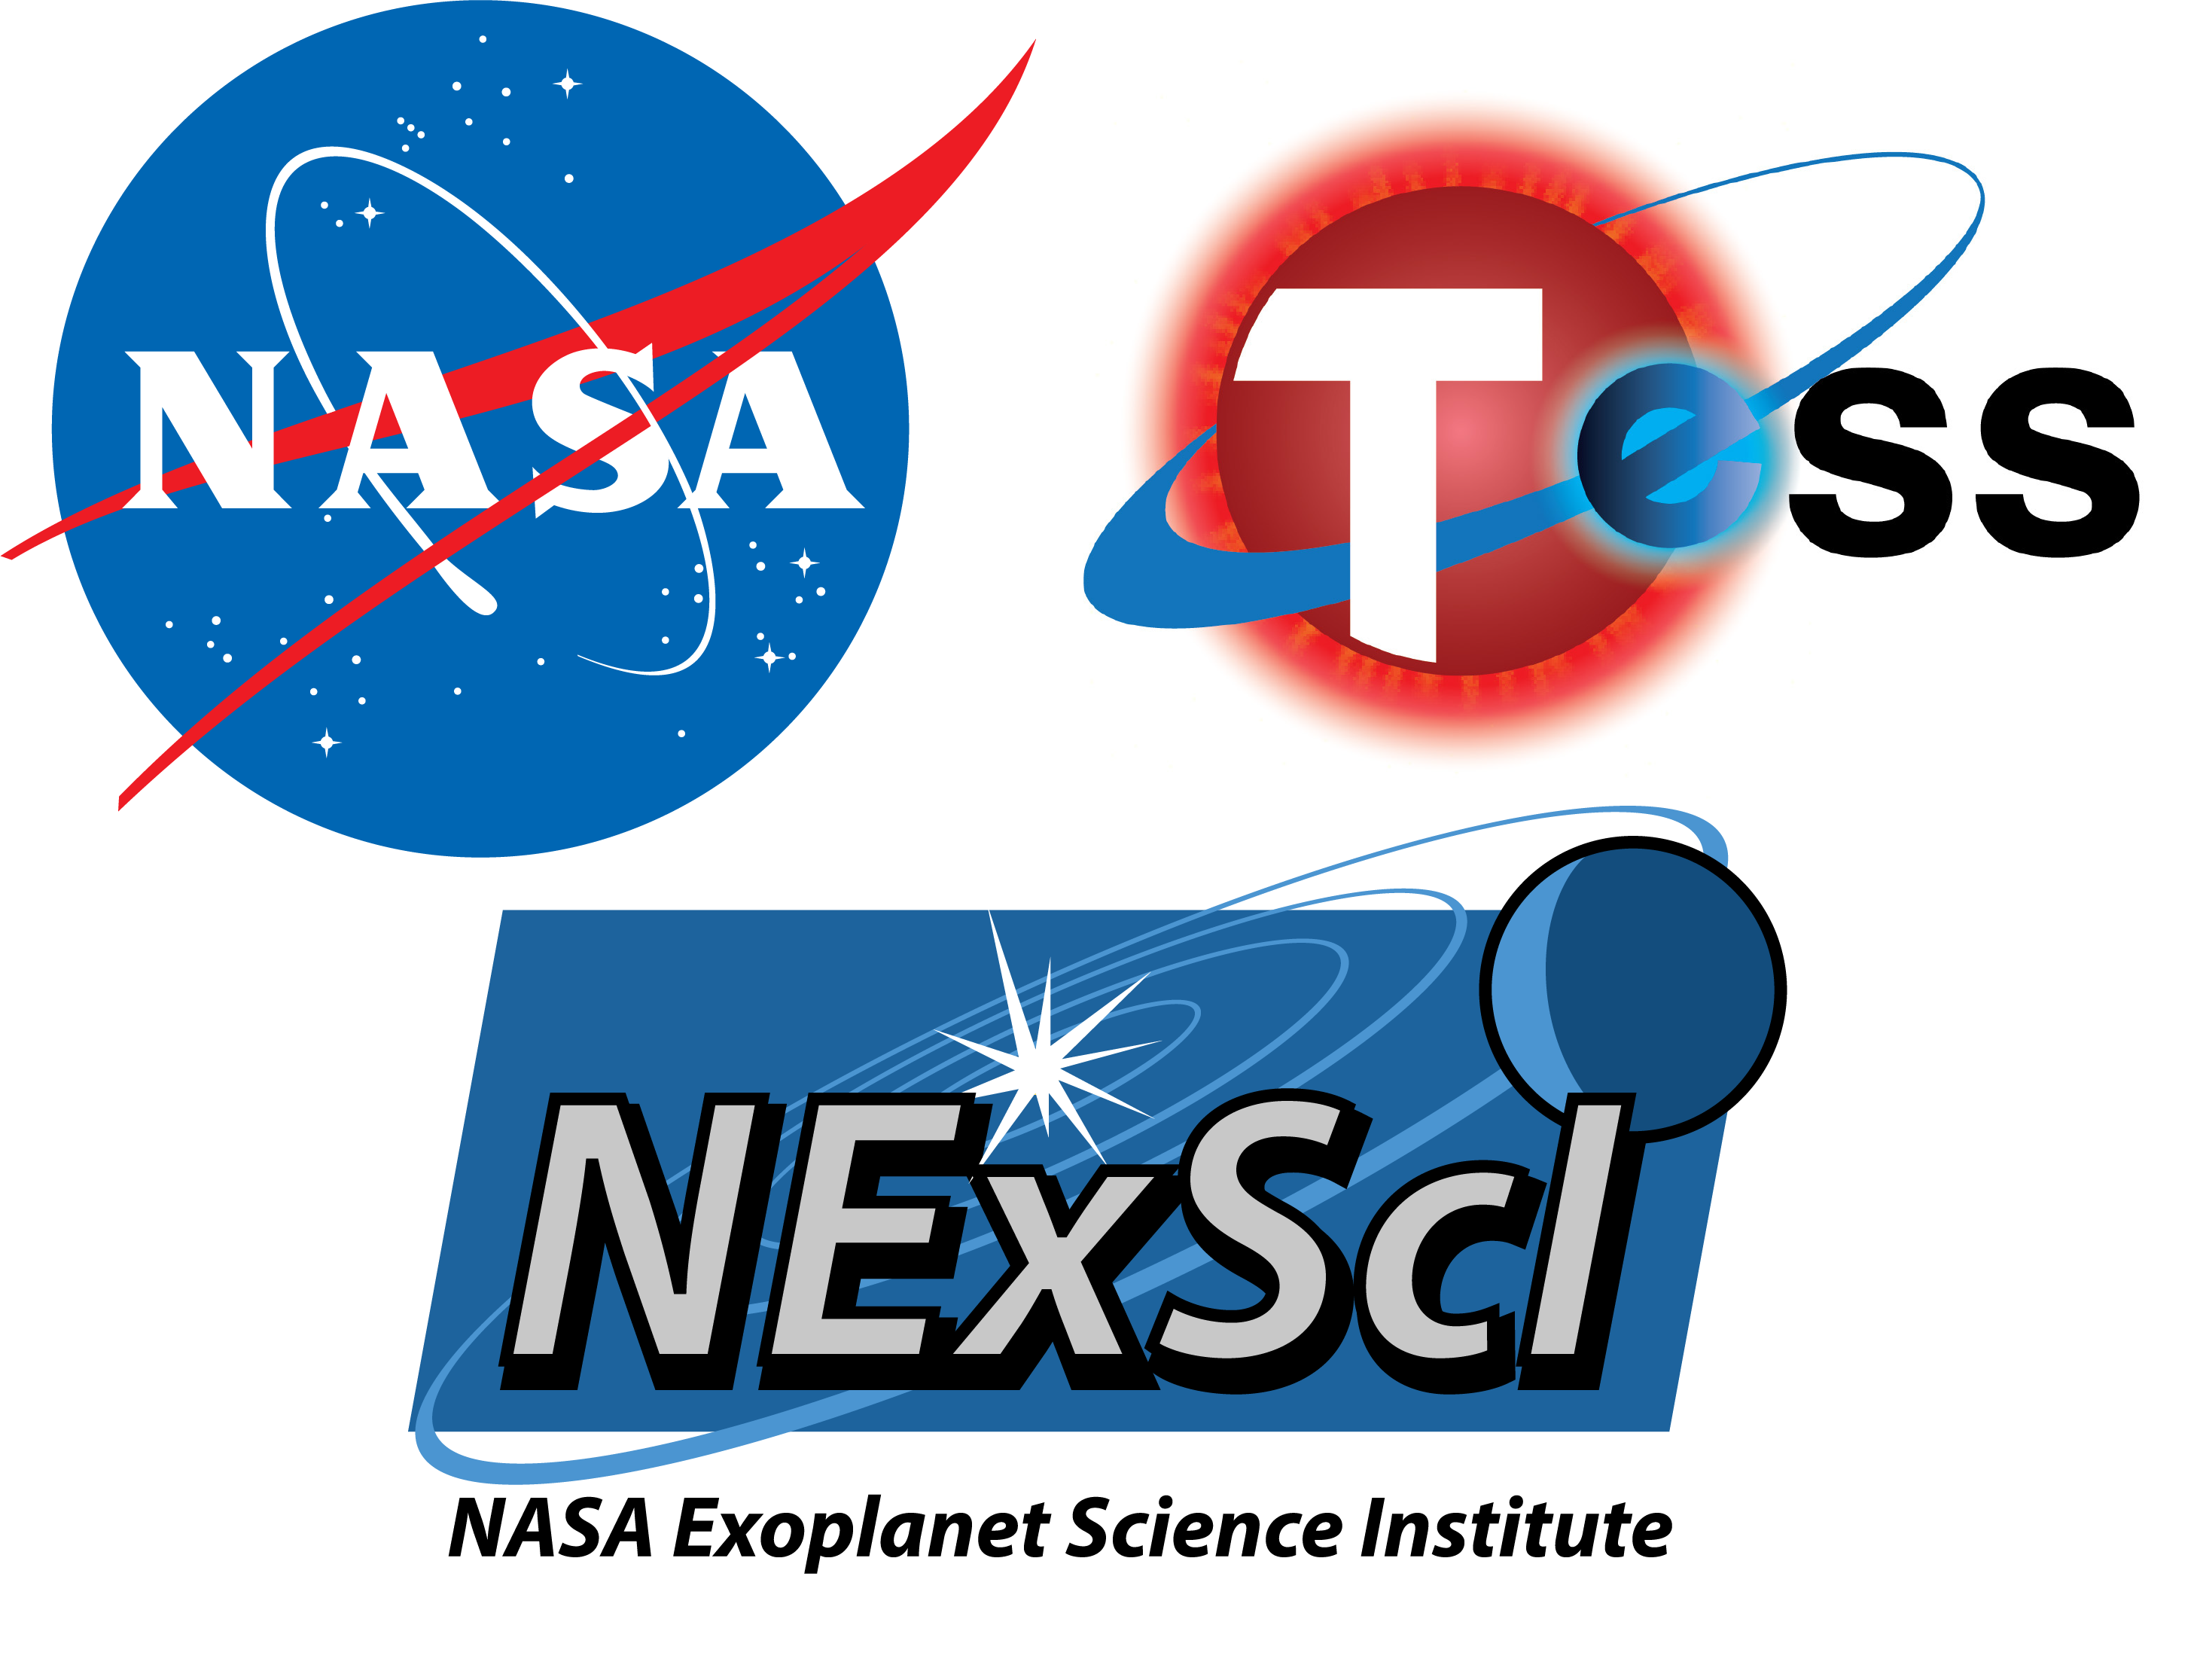 NASA Exoplanets: ExEP, NExScI, and TESS